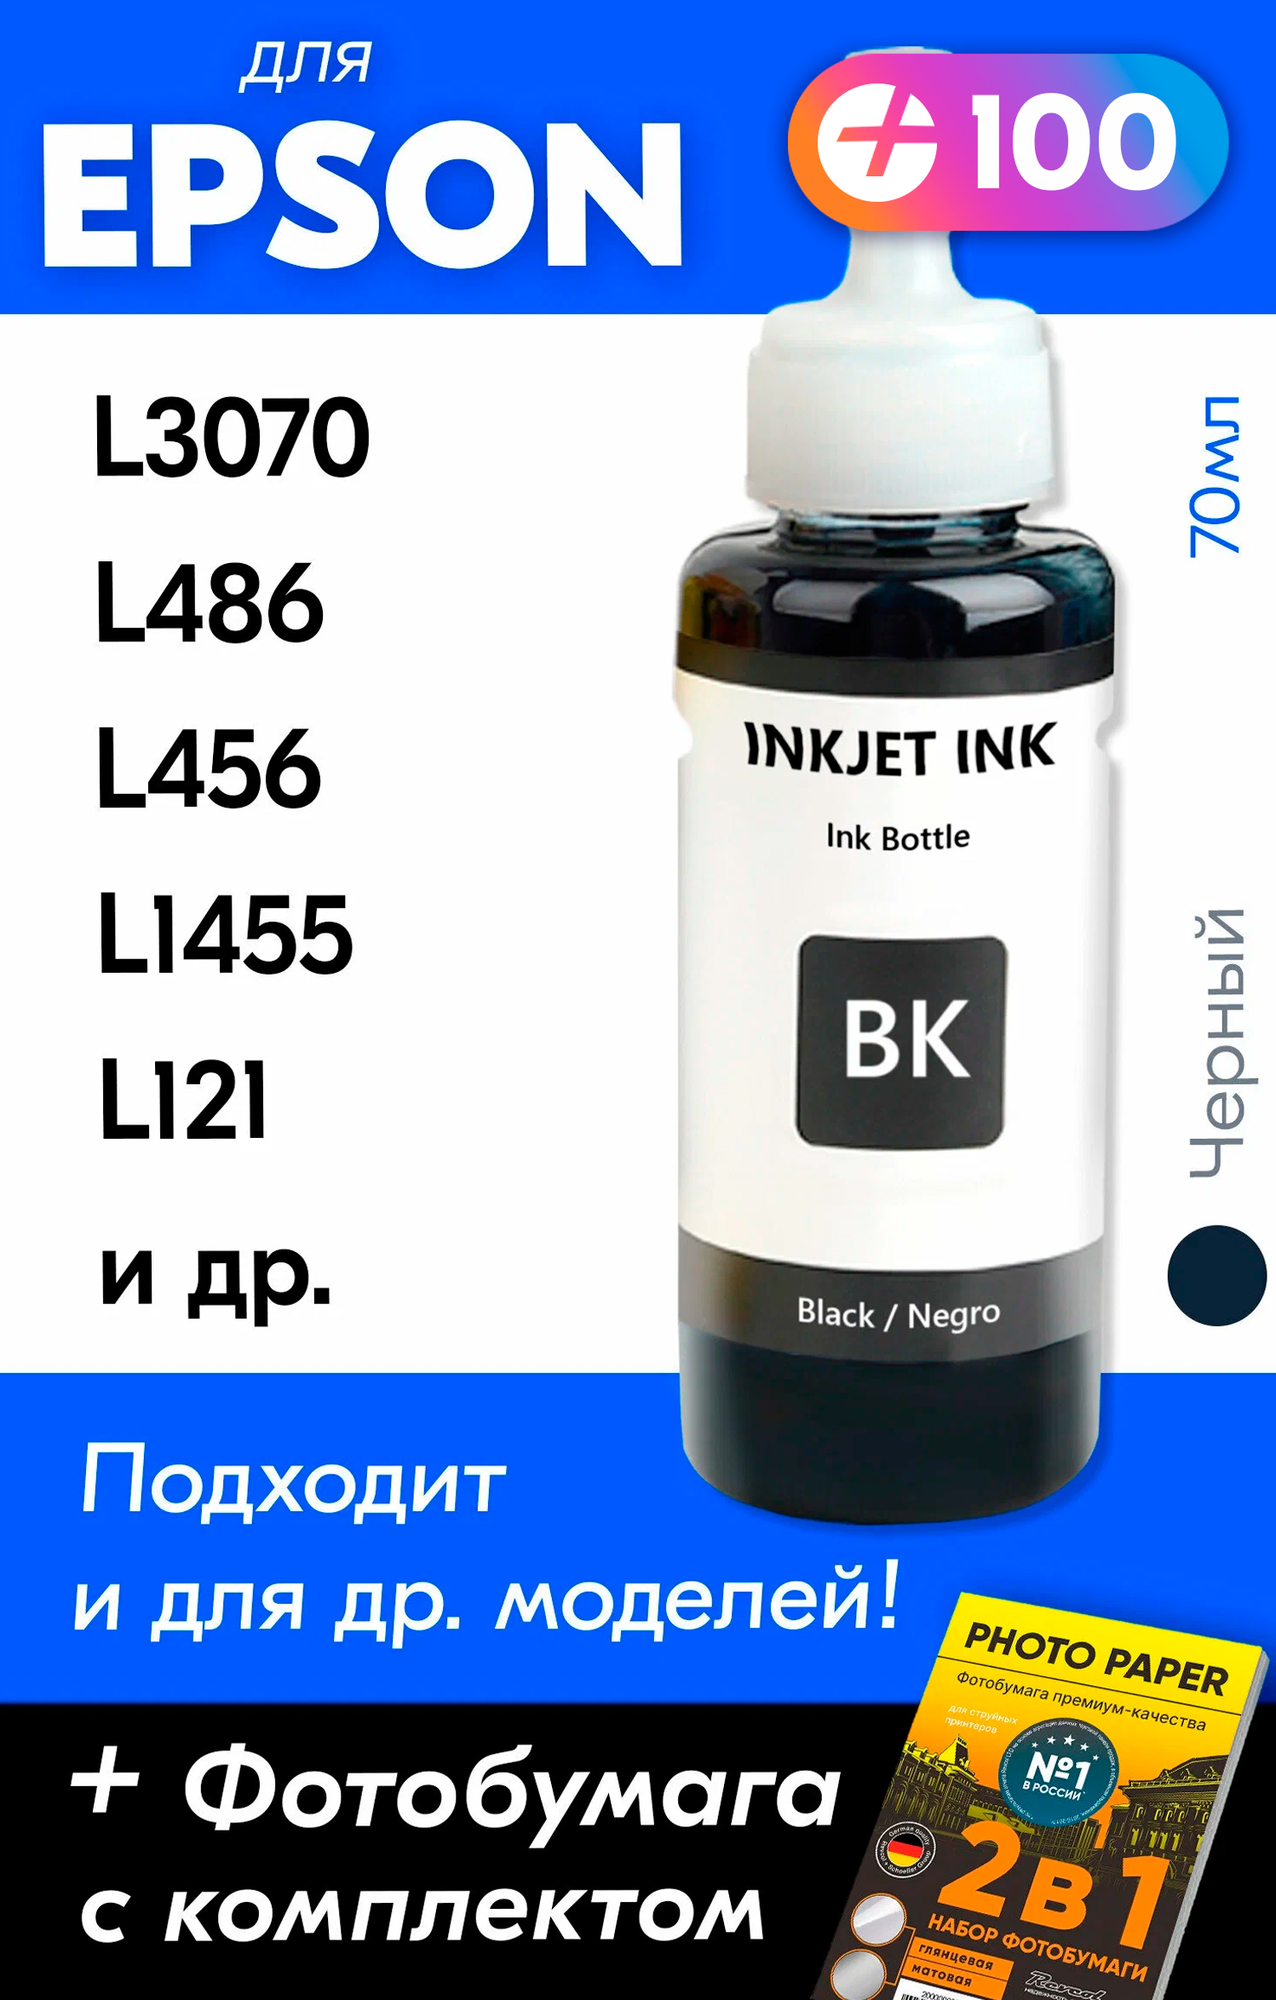 Чернила для принтера Epson L3070 L486 L456 L1455 L121 и др. Краска для заправки T6641 на струйный принтер (Черный) Black